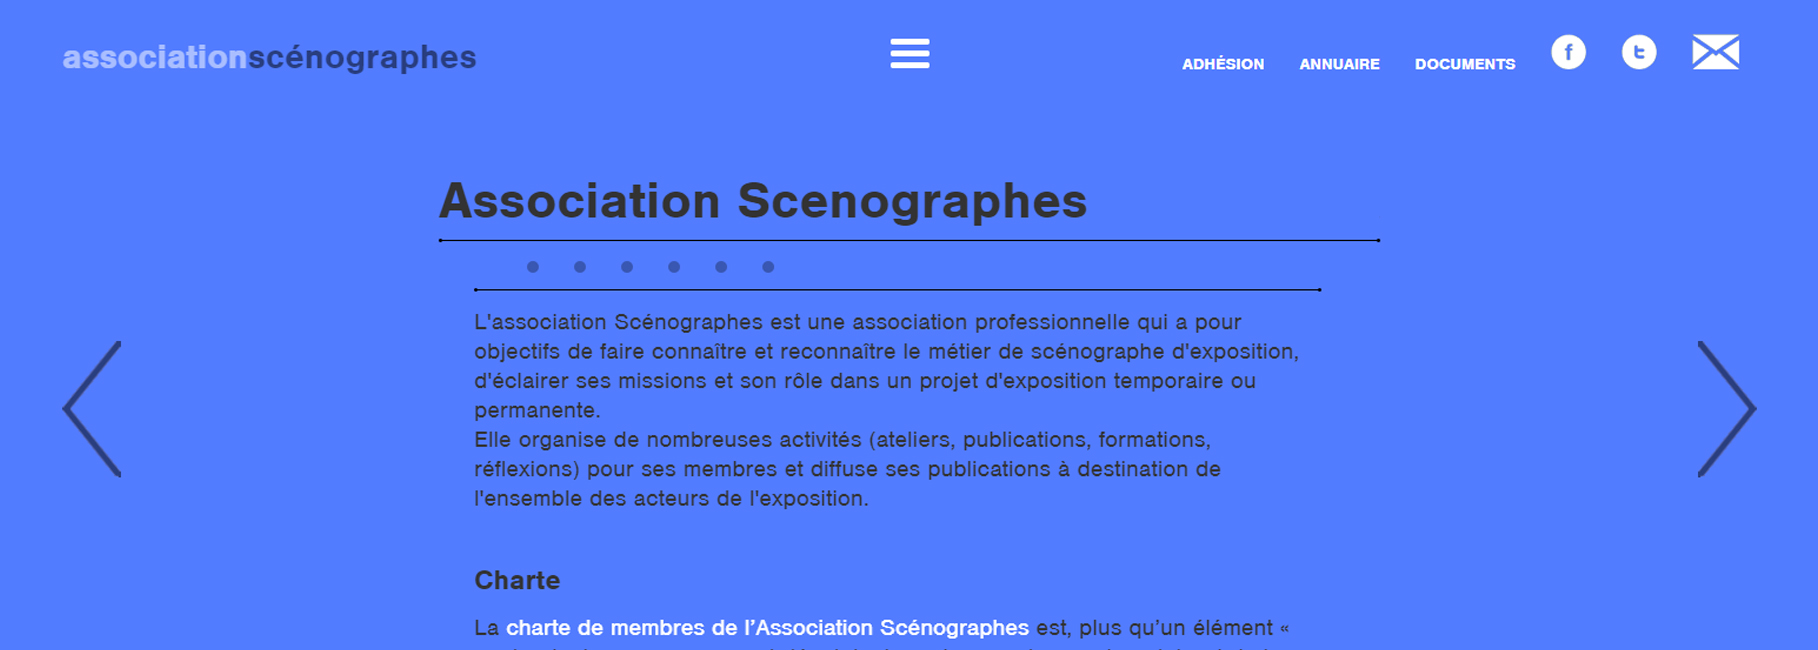 Association pour faire connaître et reconnaître le métier de scénographe d'exposition,